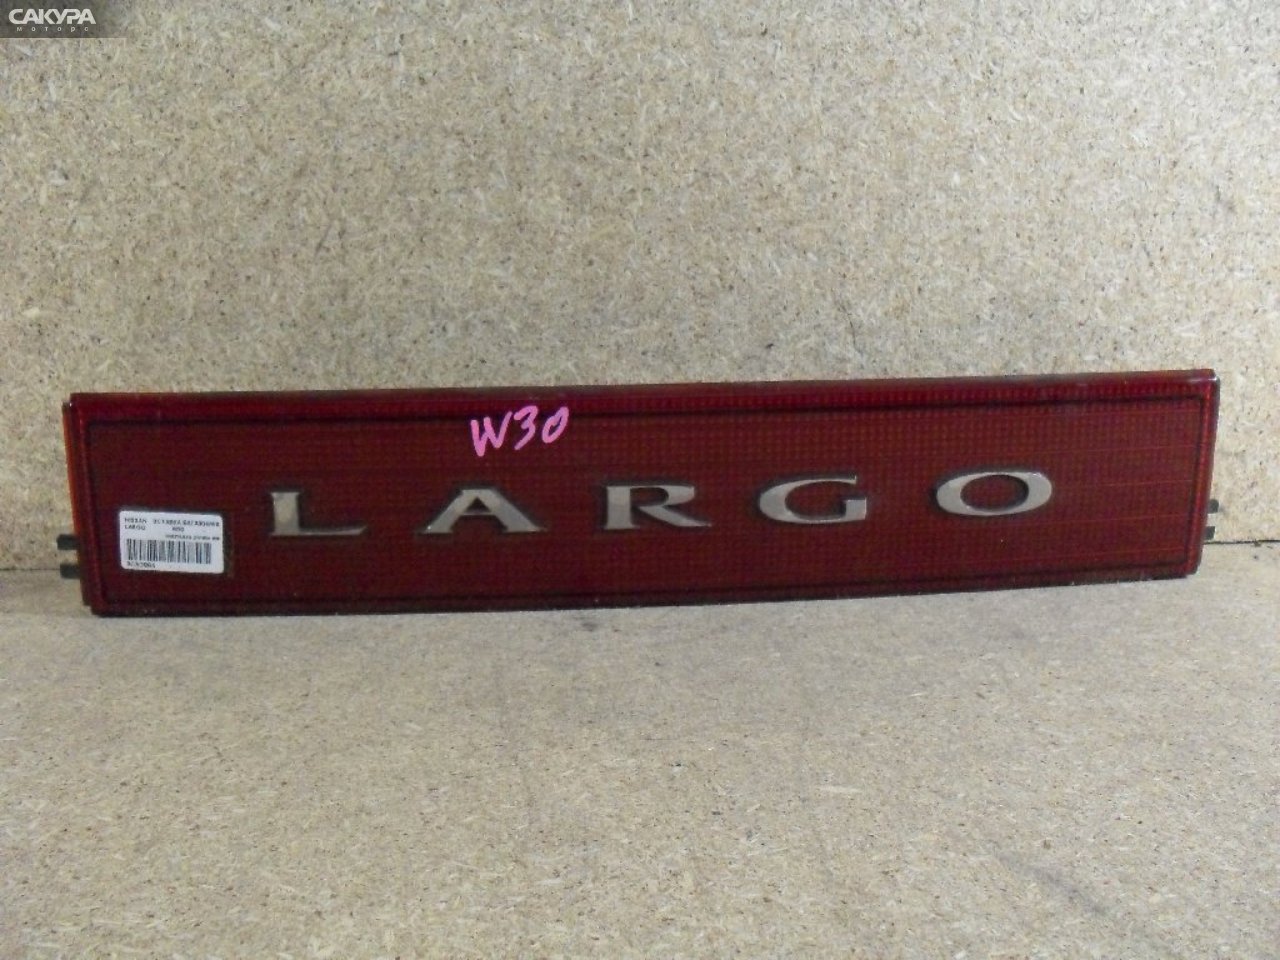 Фонарь вставка багажника Nissan Largo W30: купить в Сакура Абакан.